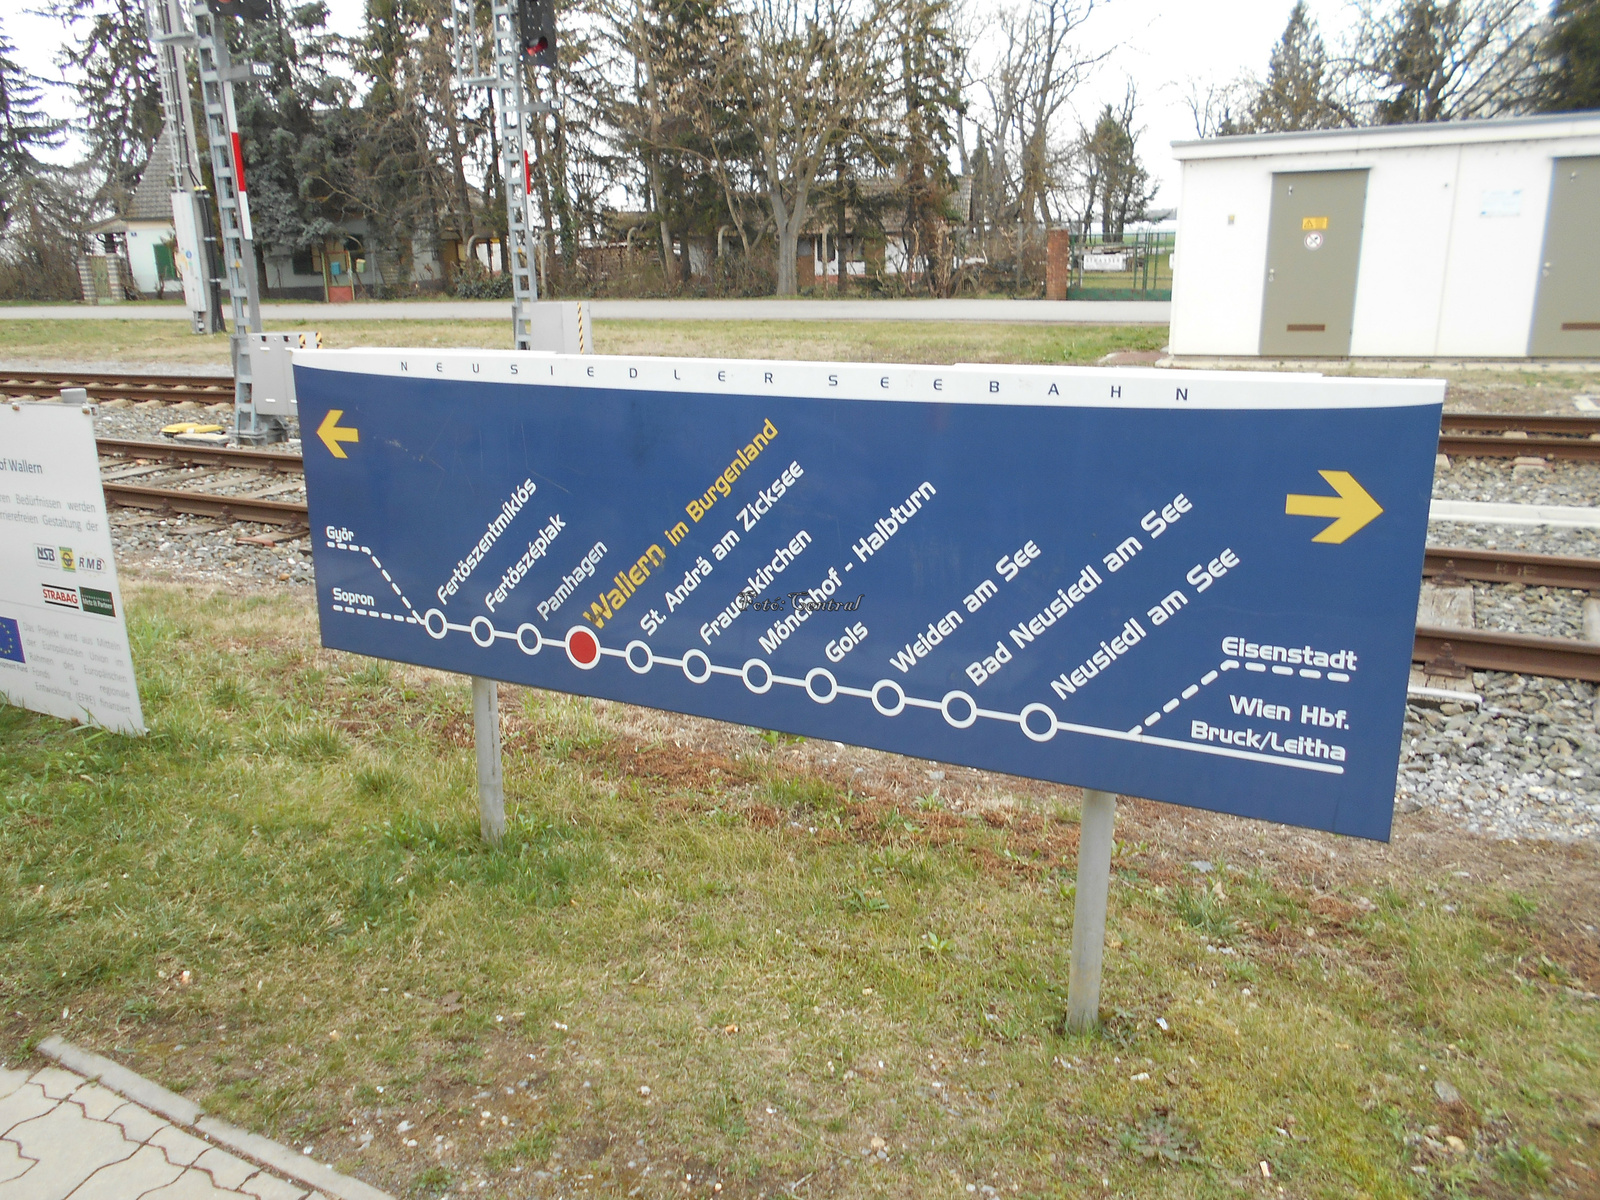 A vasútvonalon lévő állomások,és megállók tájékoztató táblája.